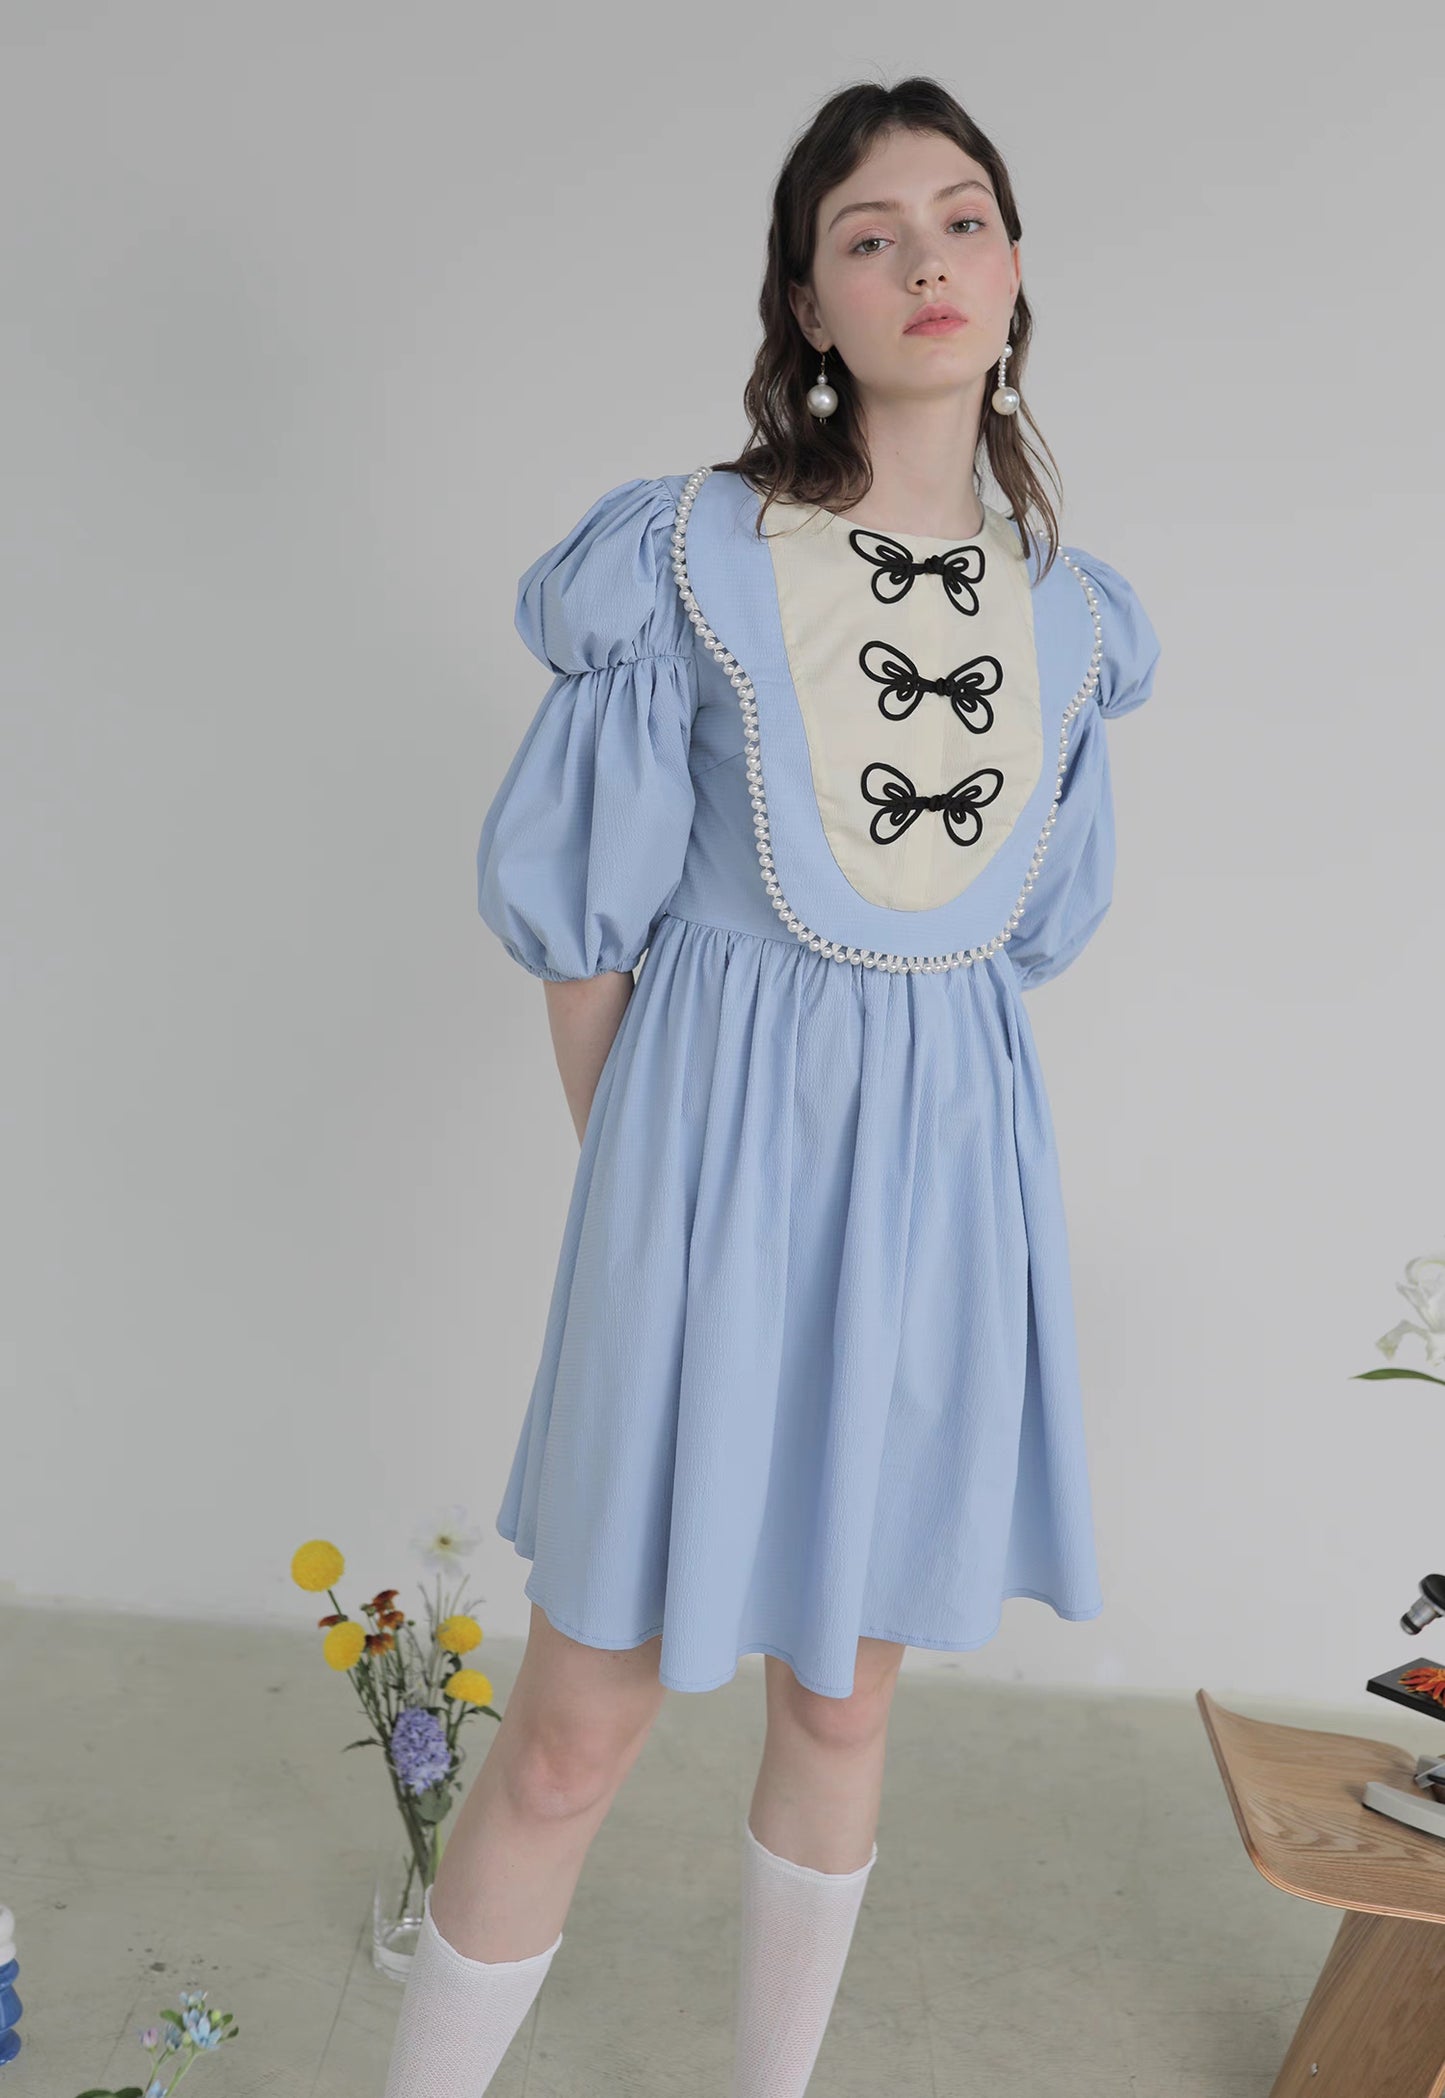 blue butterfly plate button short-sleeved dress 